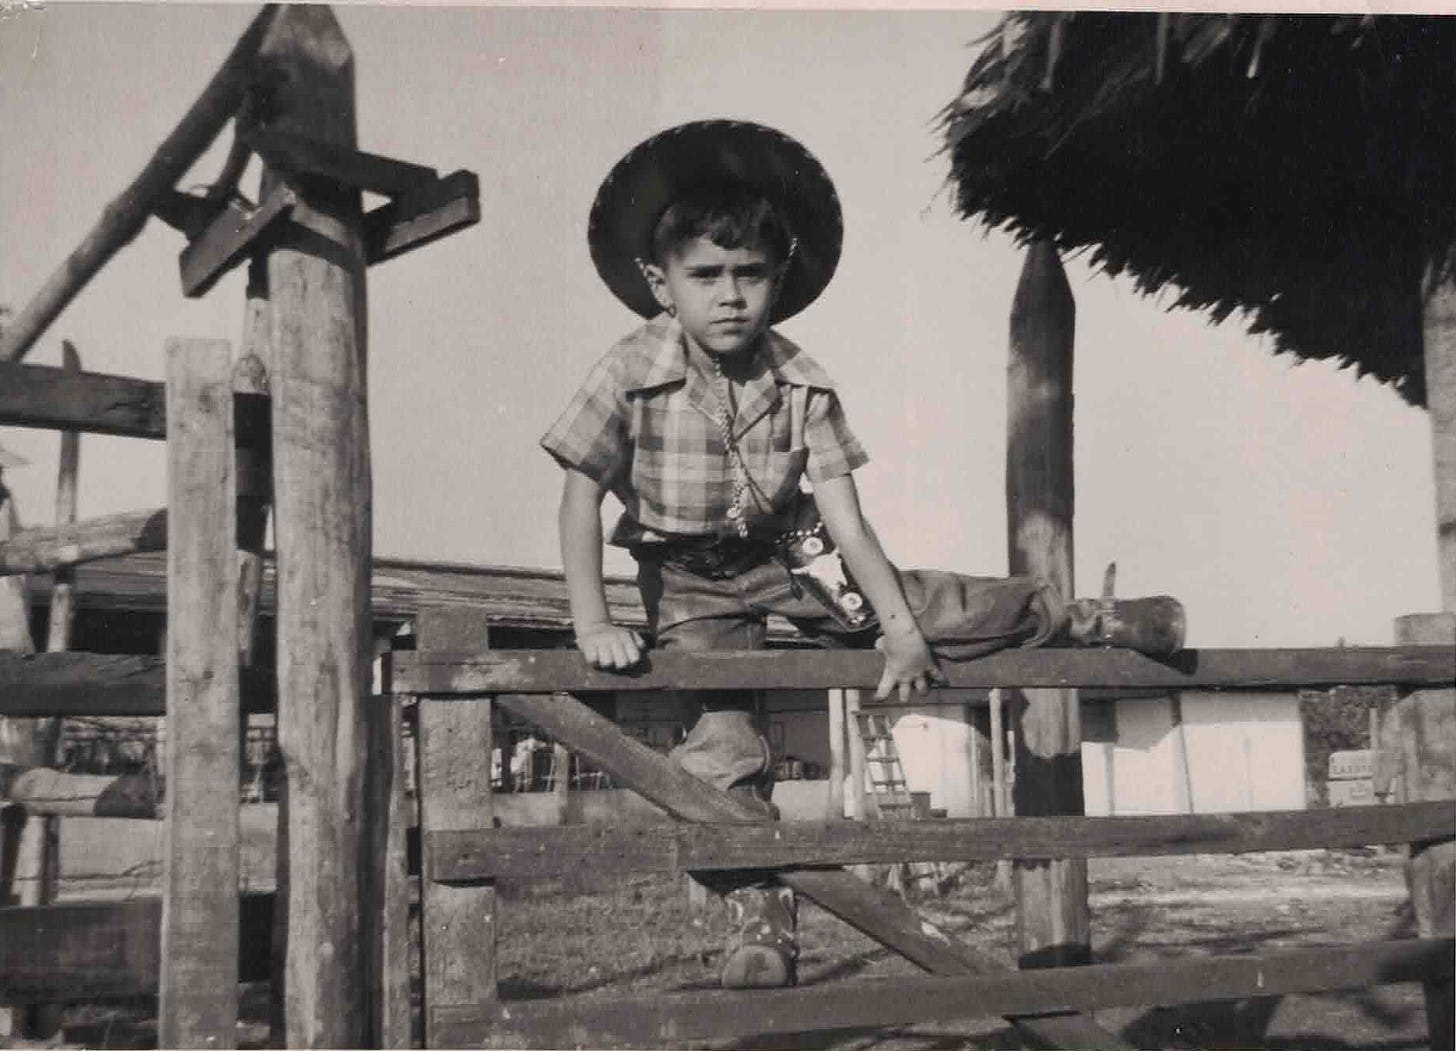 Emilio Fernande at age 5